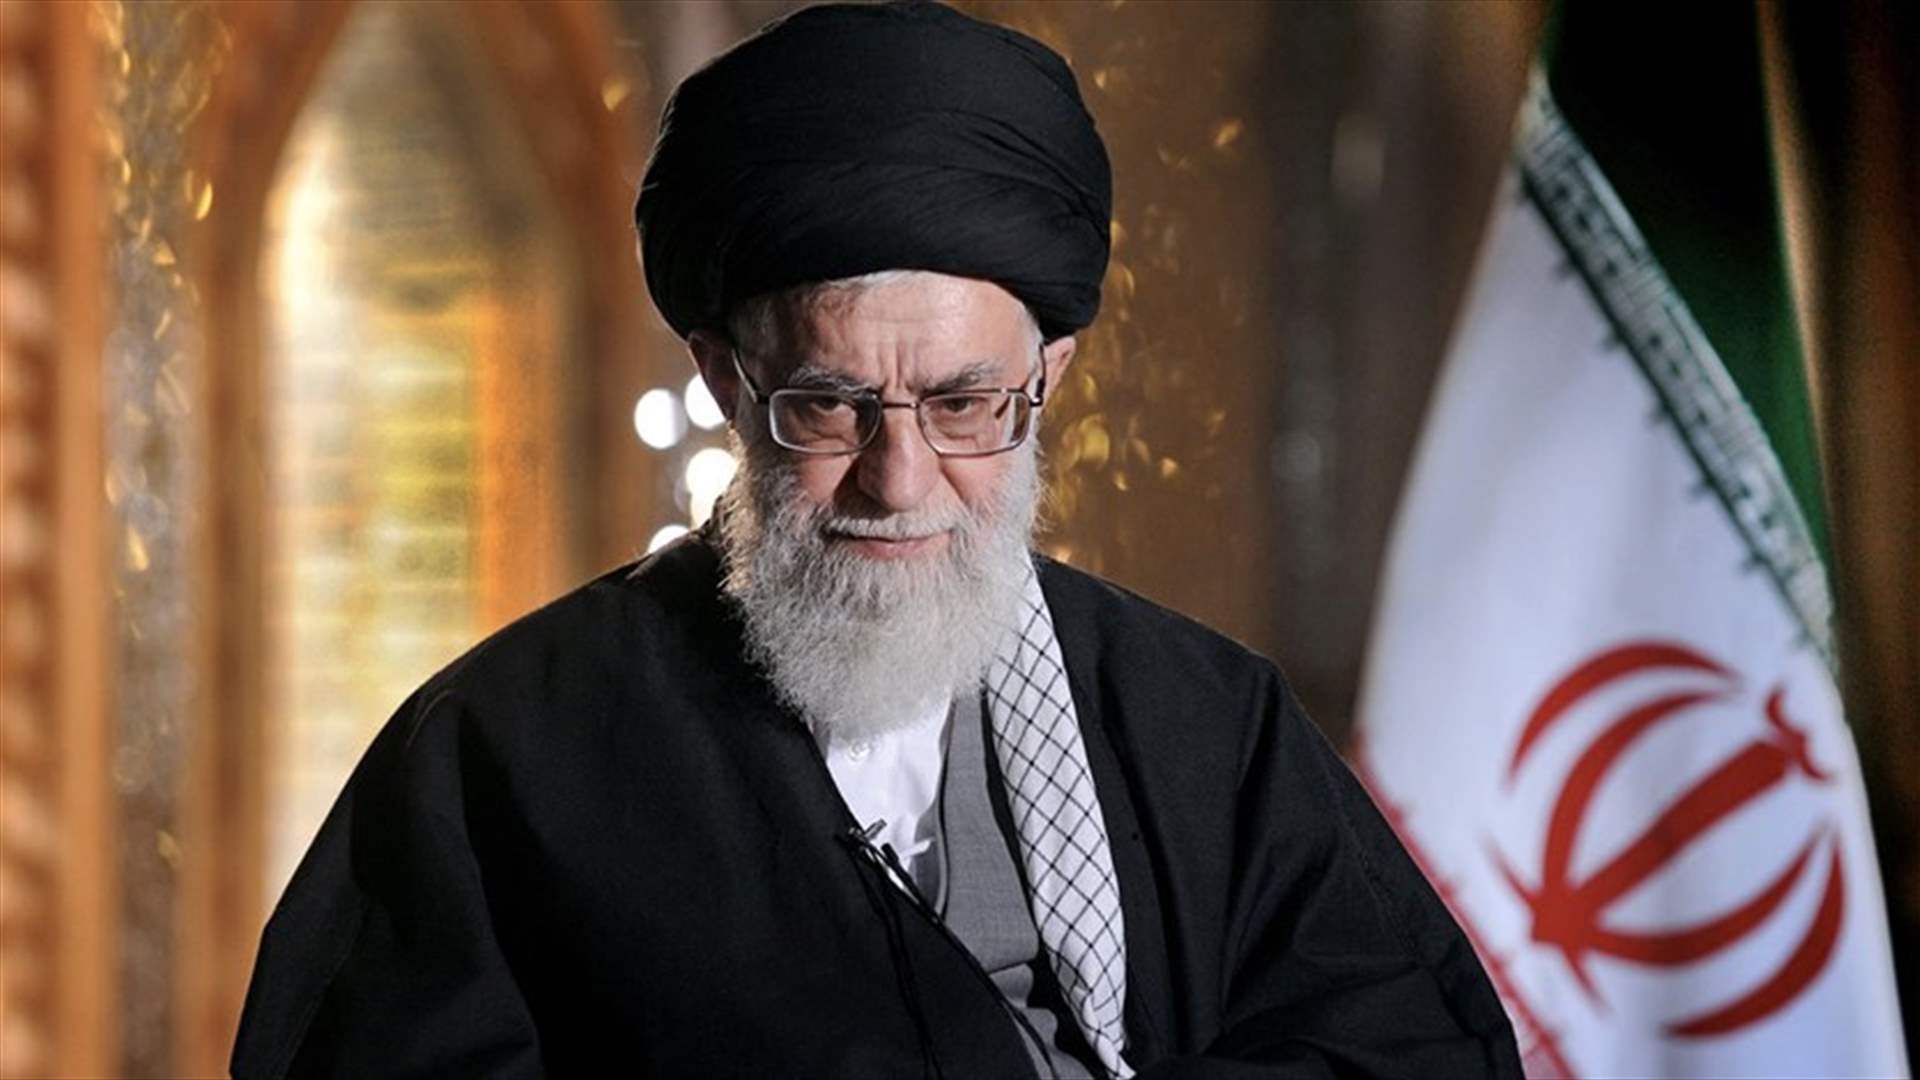 خامنئي ينصّب بزشكيان رئيساً لإيران بعد فوزه بالانتخابات